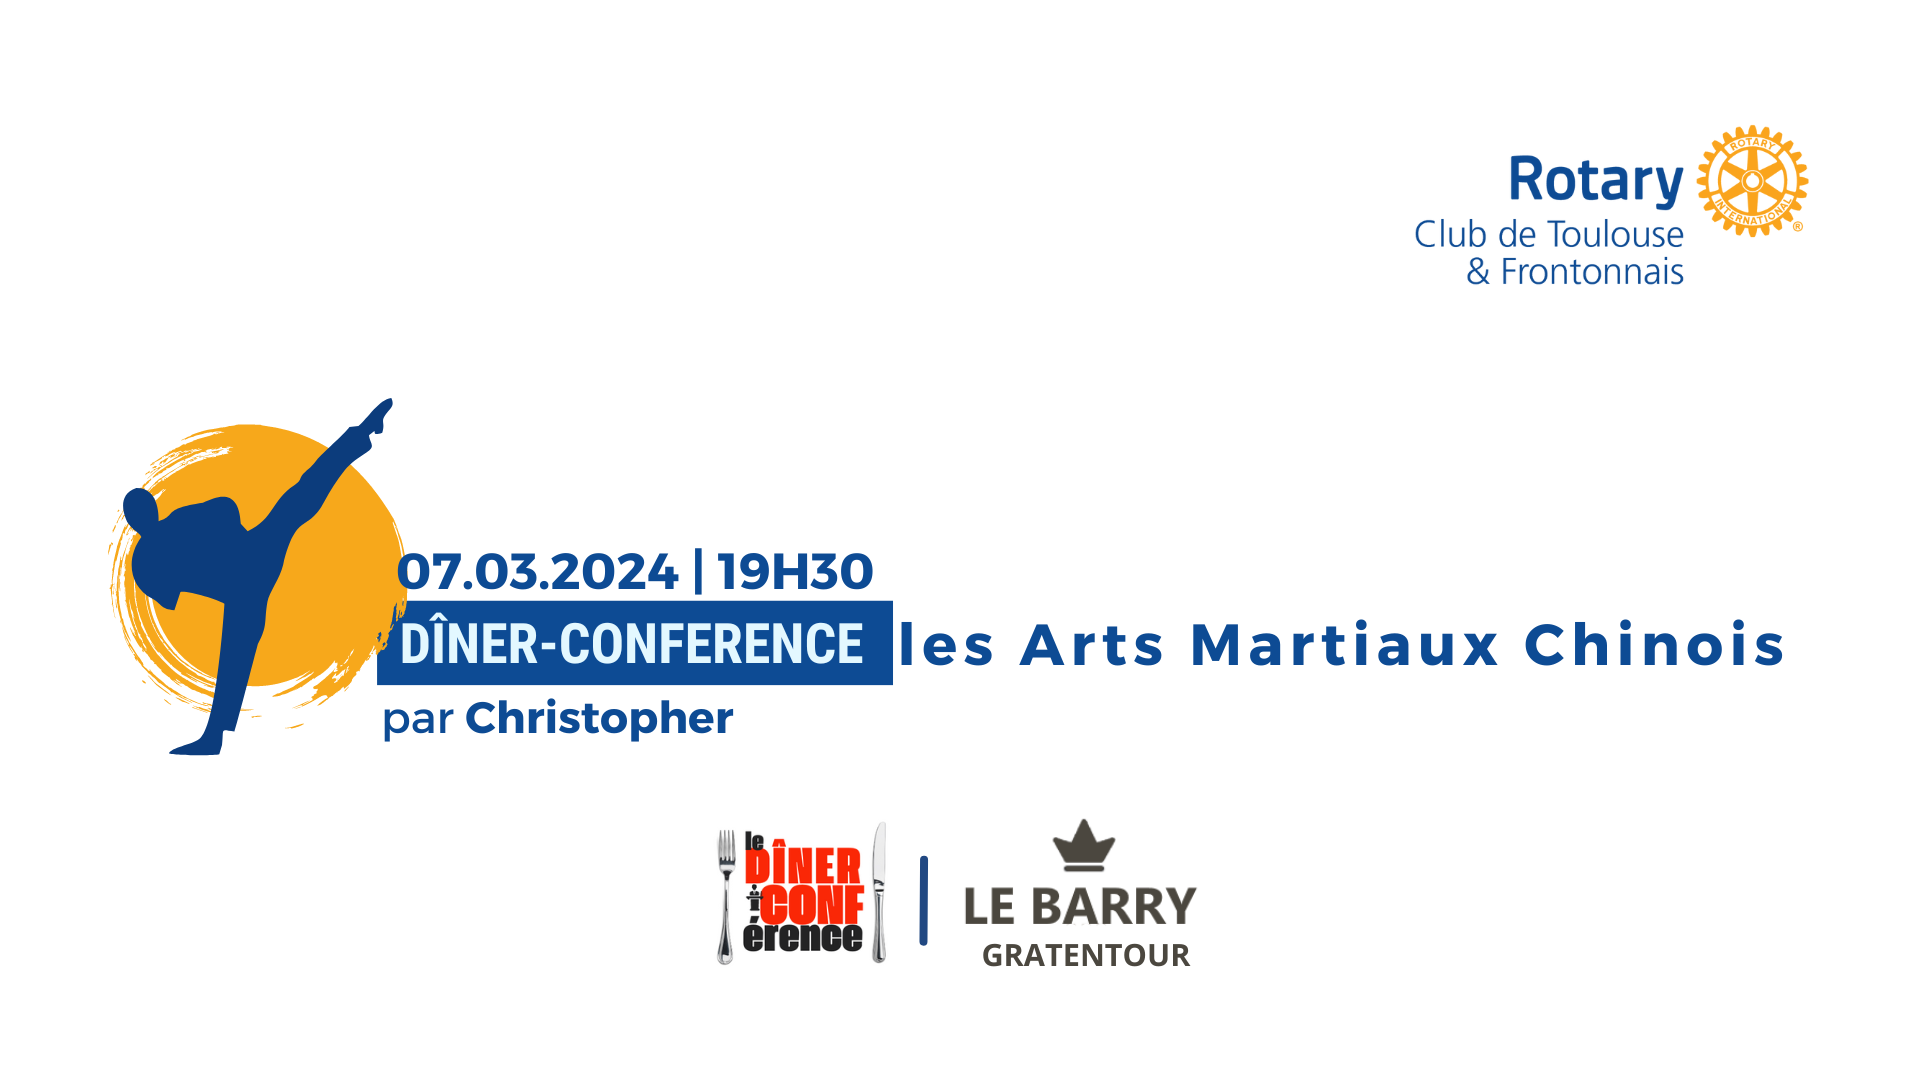 Diner Conference sur les Arts Martiaux chinois par le rotary club de toulouse et frontonnais au Barry de Grattentour